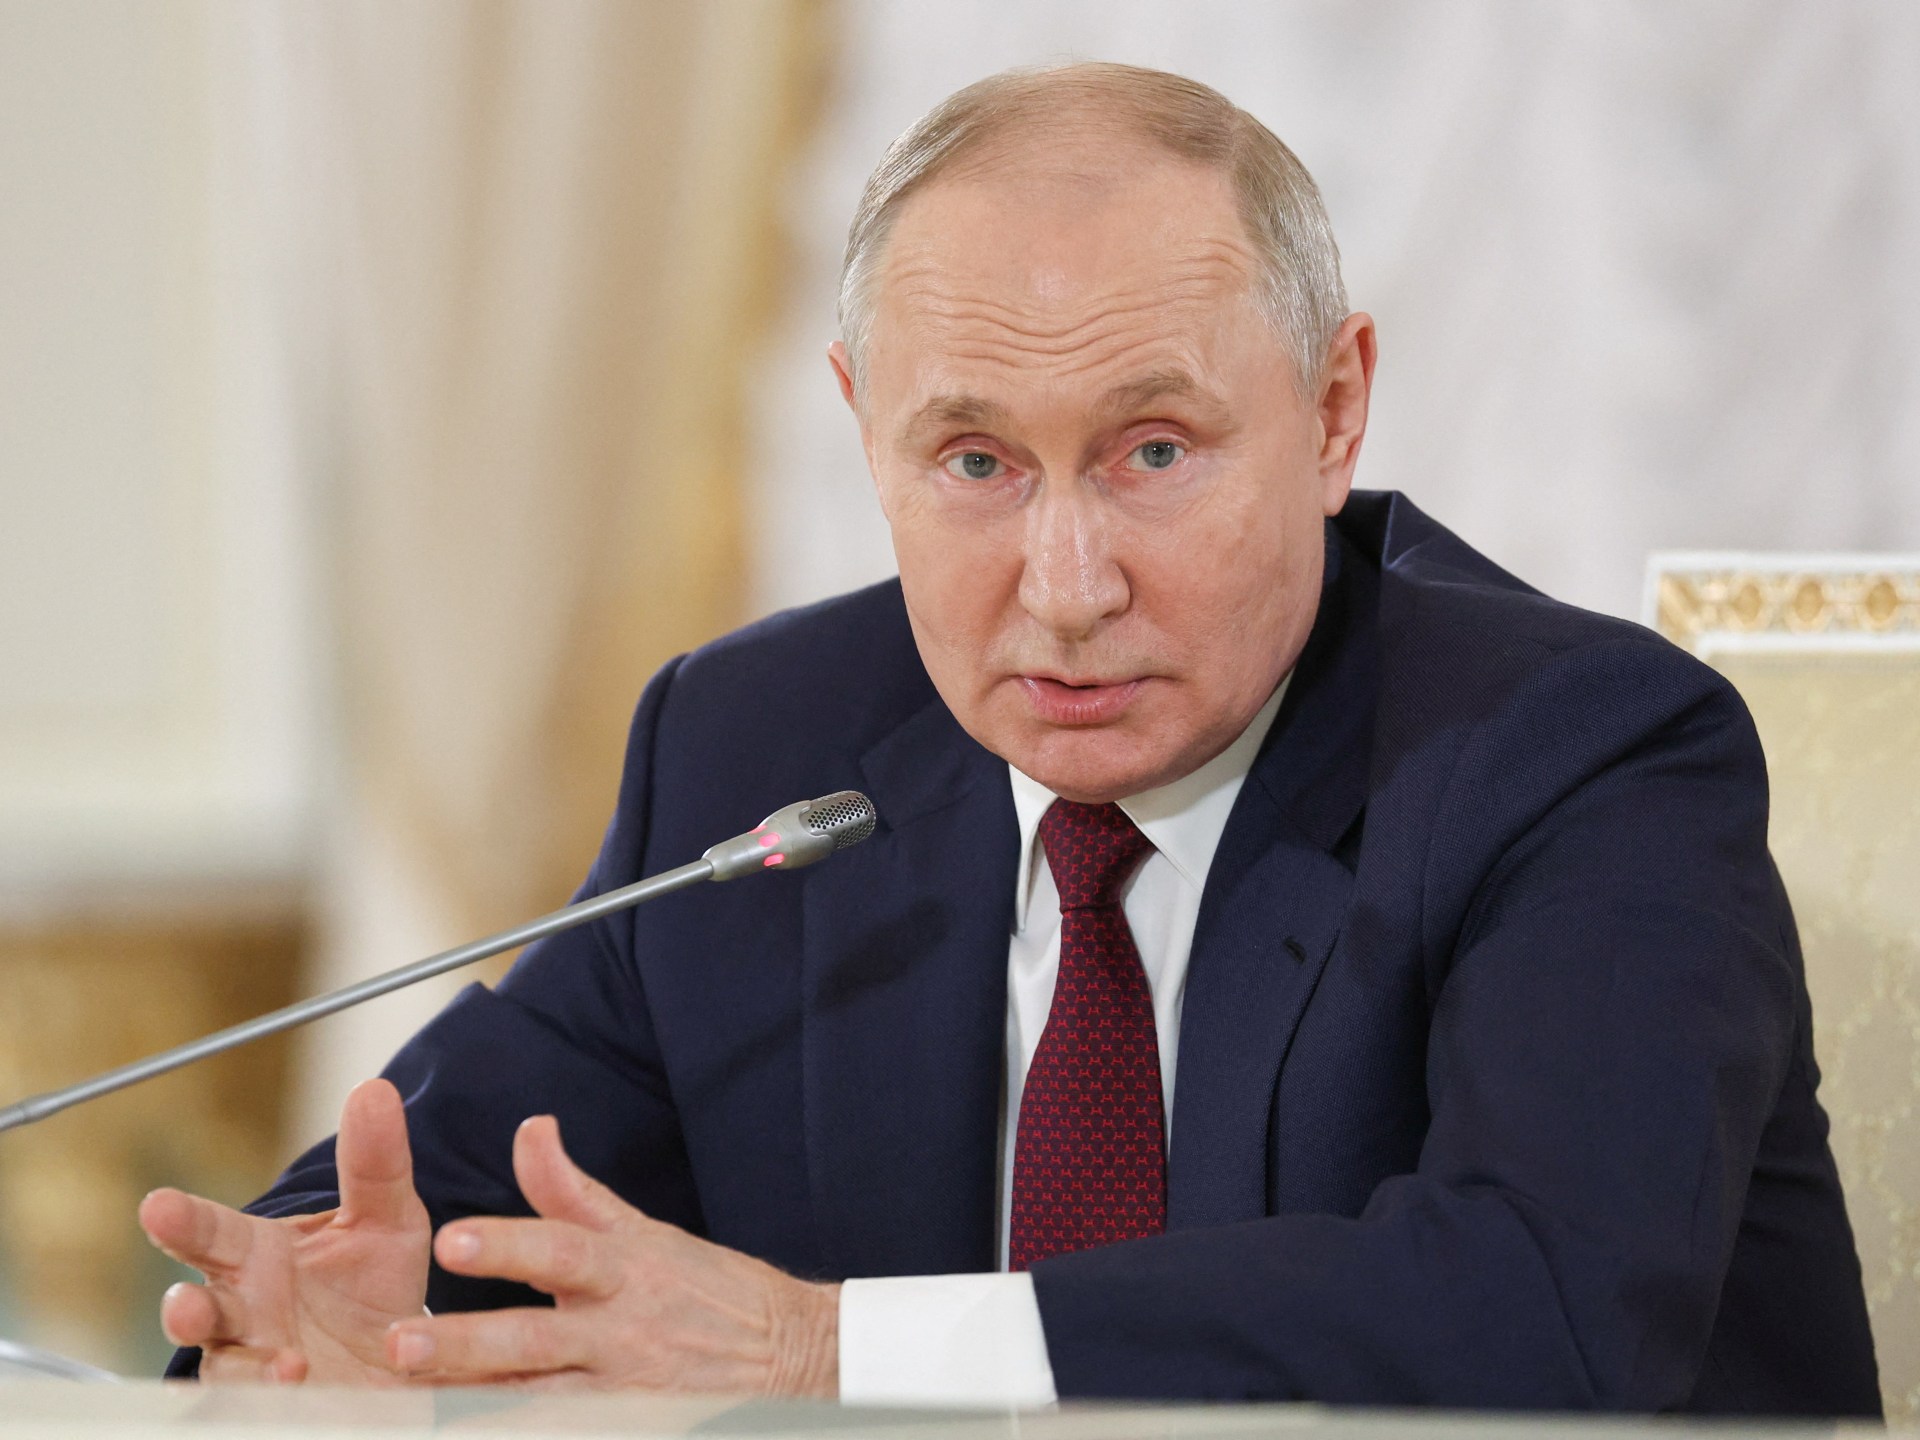 Putin mengatakan proposal Afrika bisa menjadi dasar perdamaian di Ukraina |  Berita perang Rusia-Ukraina